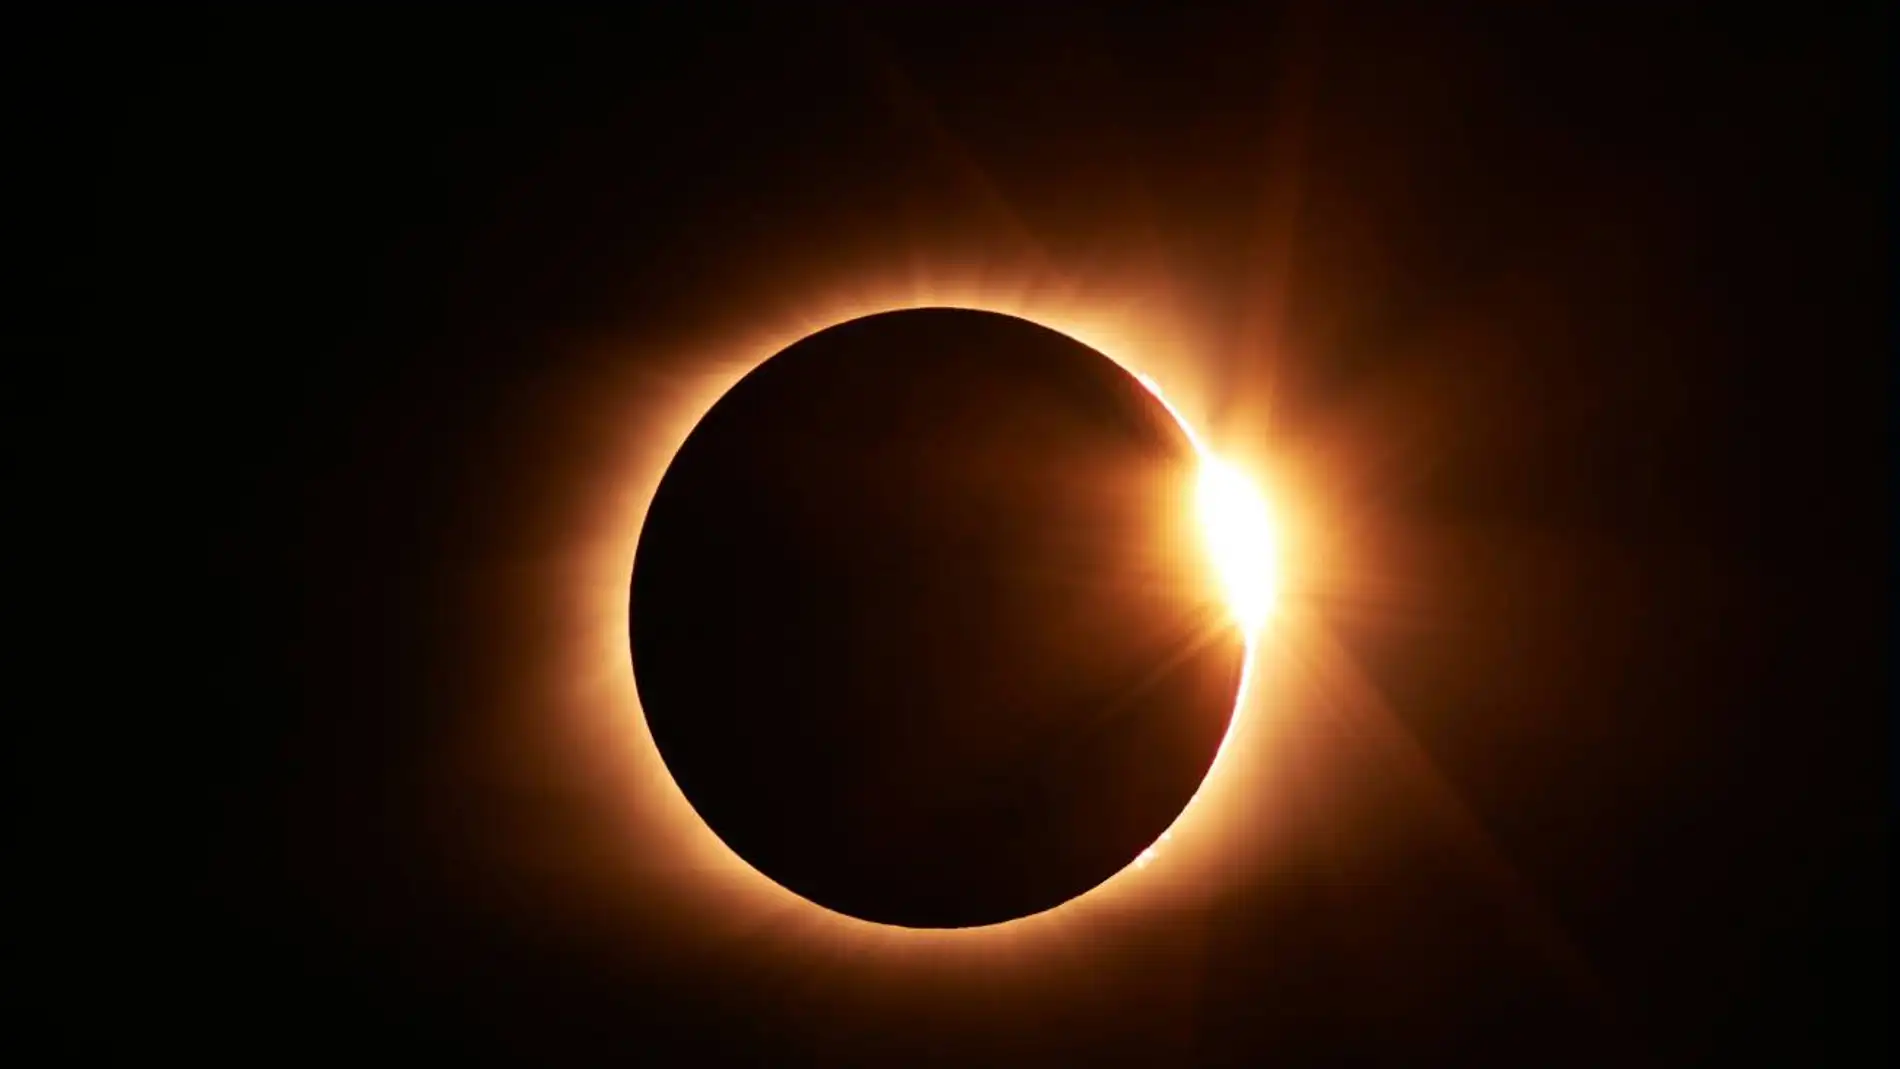 Cómo hacer una foto del próximo eclipse solar de forma segura